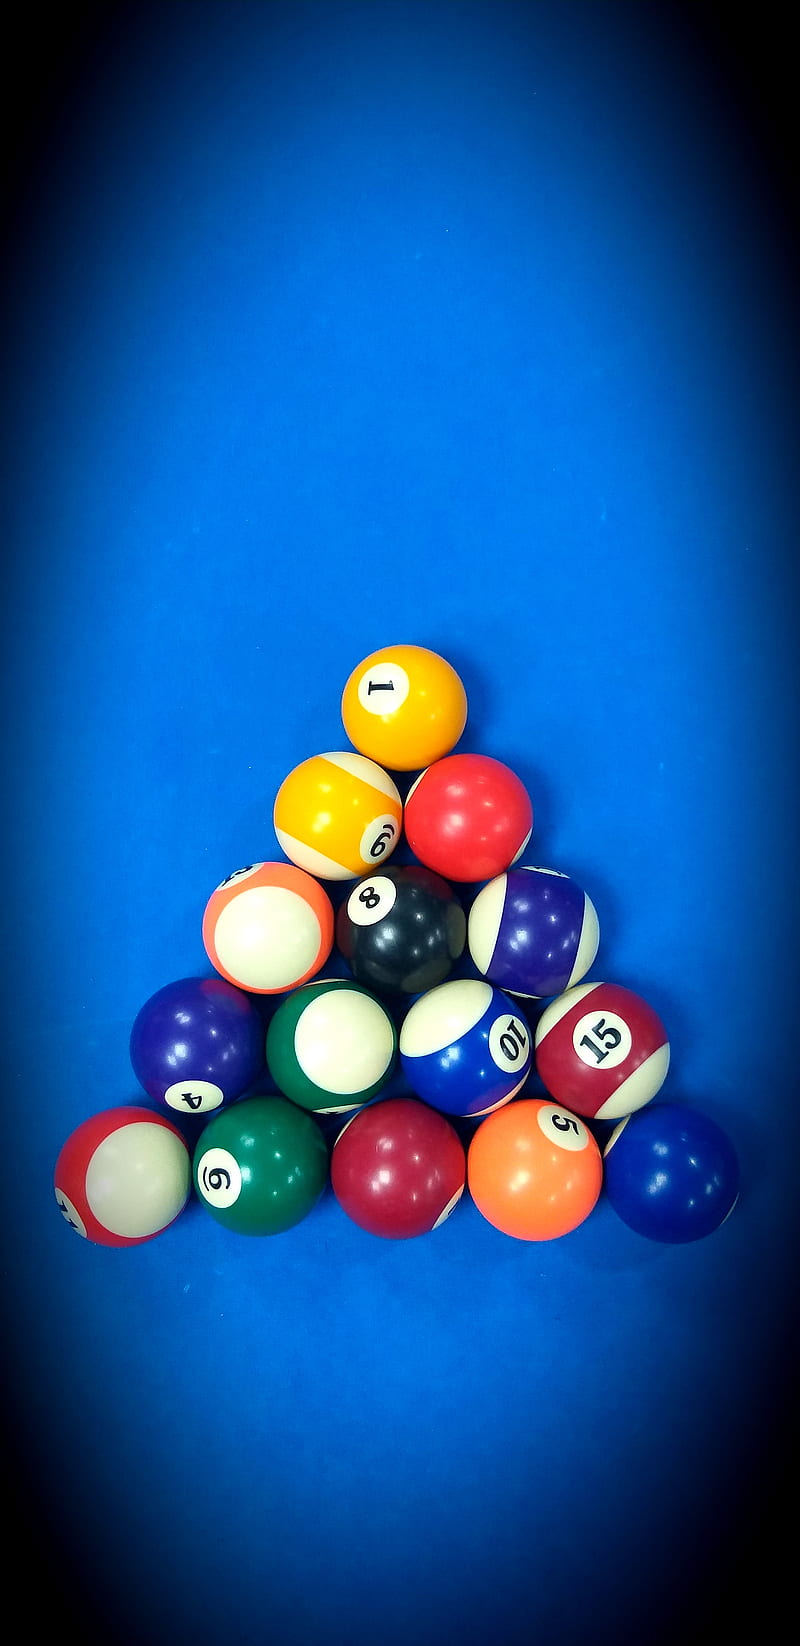 Billiards, 8ball, 8 ball, 8ball pool, billiards pool, blue background, blue , billiards , billiards background, cricket ball, HD phone wallpaper